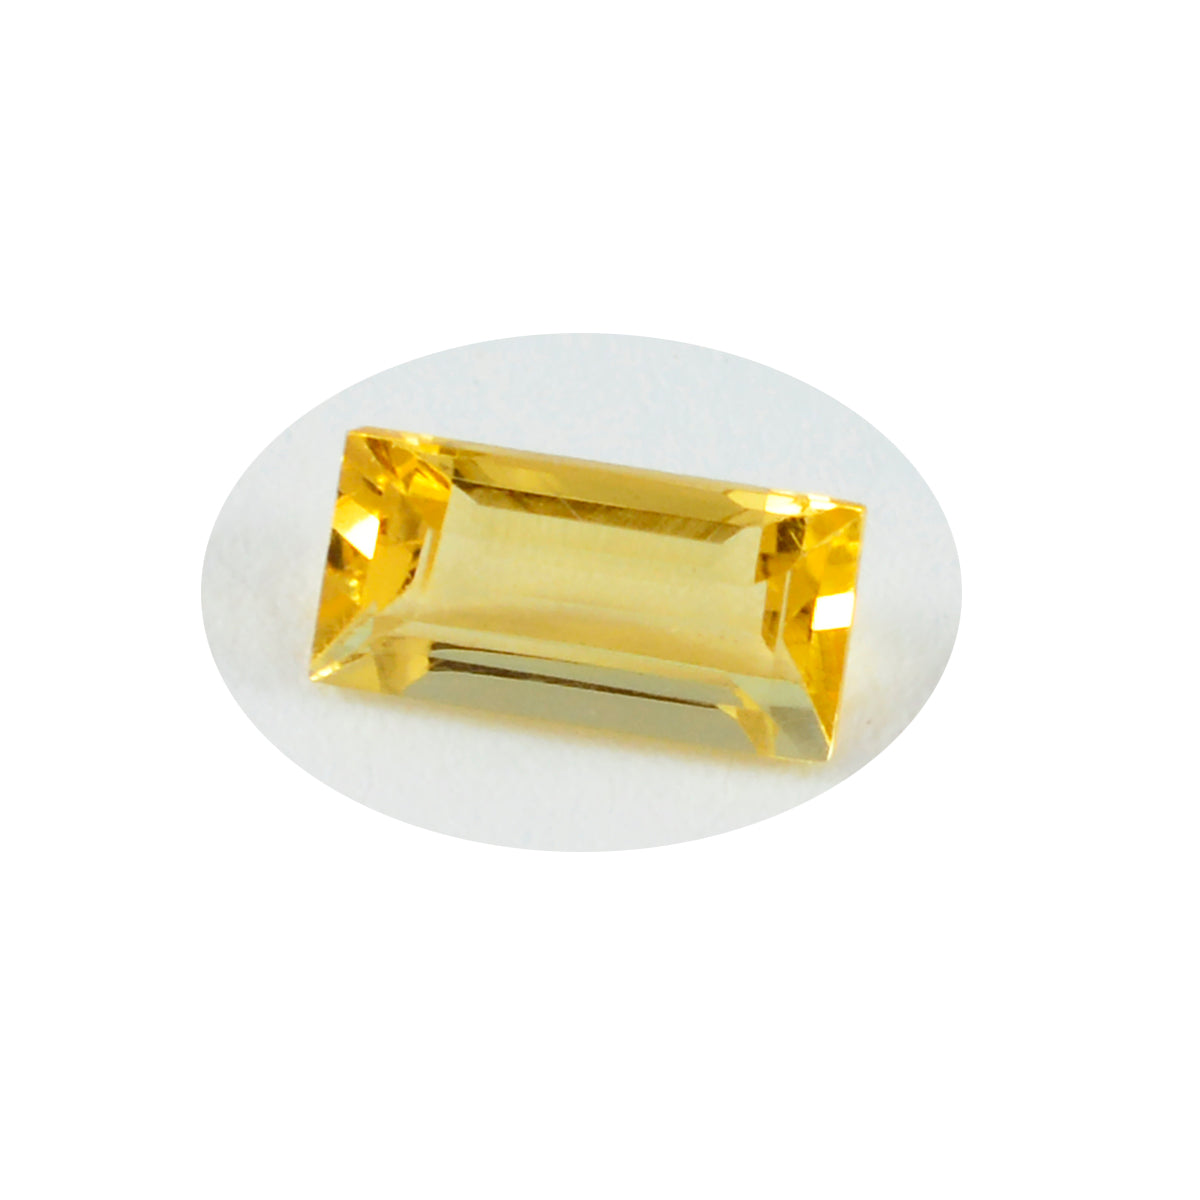 Riyogems 1 pieza de citrino amarillo auténtico facetado 4x4 mm forma de cojín una gema de calidad